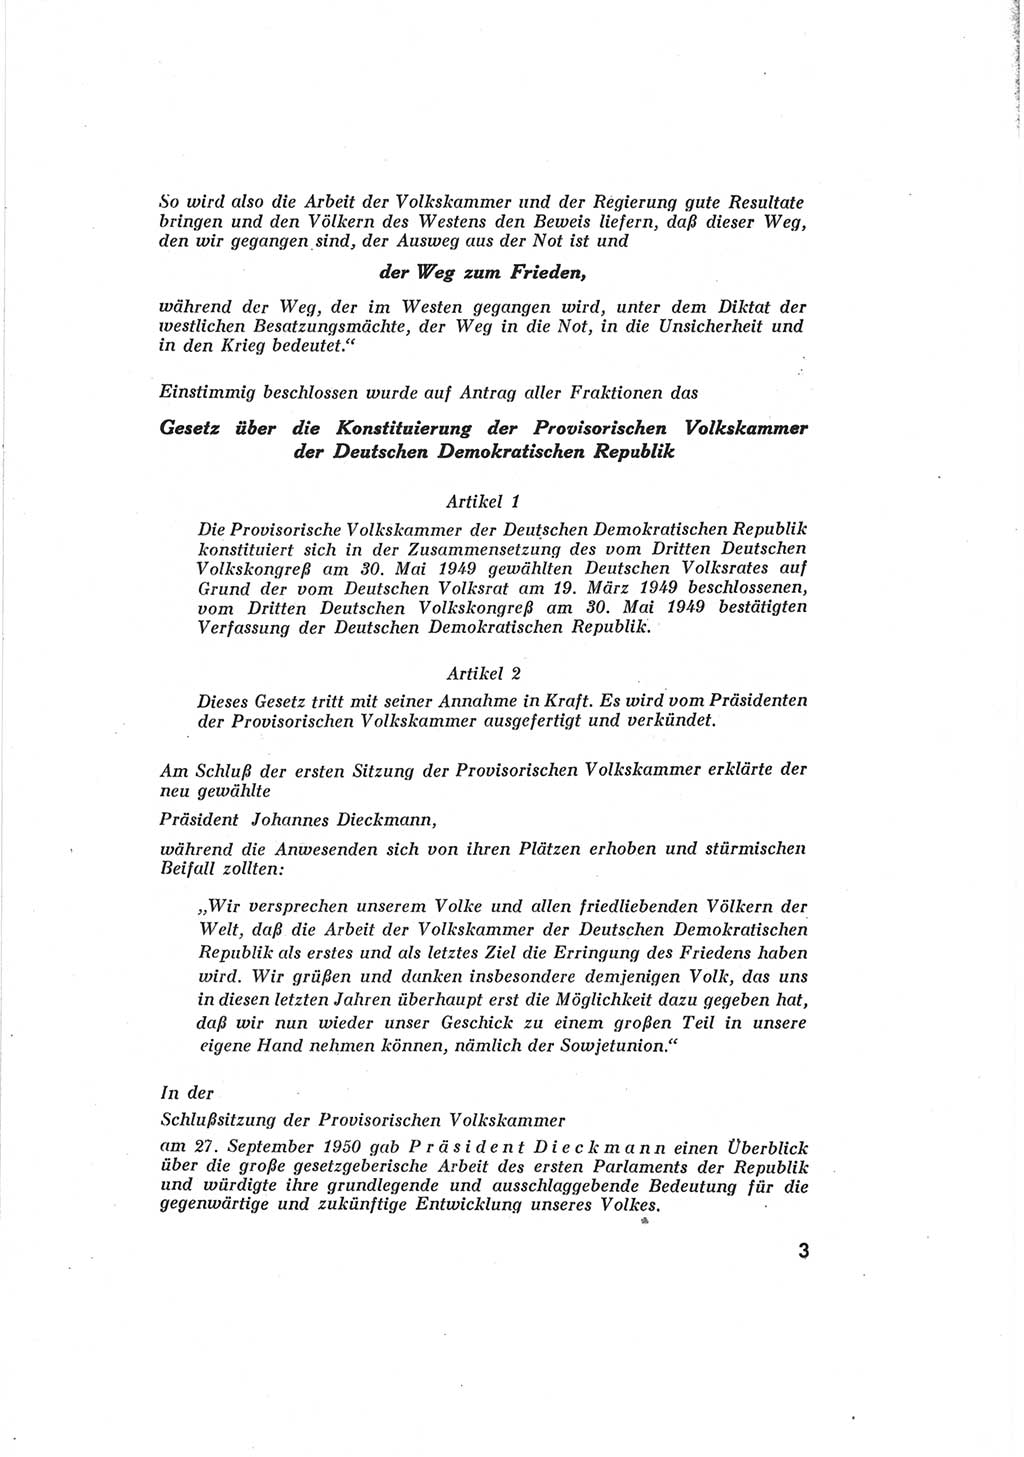 Provisorische Volkskammer (VK) der Deutschen Demokratischen Republik (DDR) 1949-1950, Dokument 5 (Prov. VK DDR 1949-1950, Dok. 5)